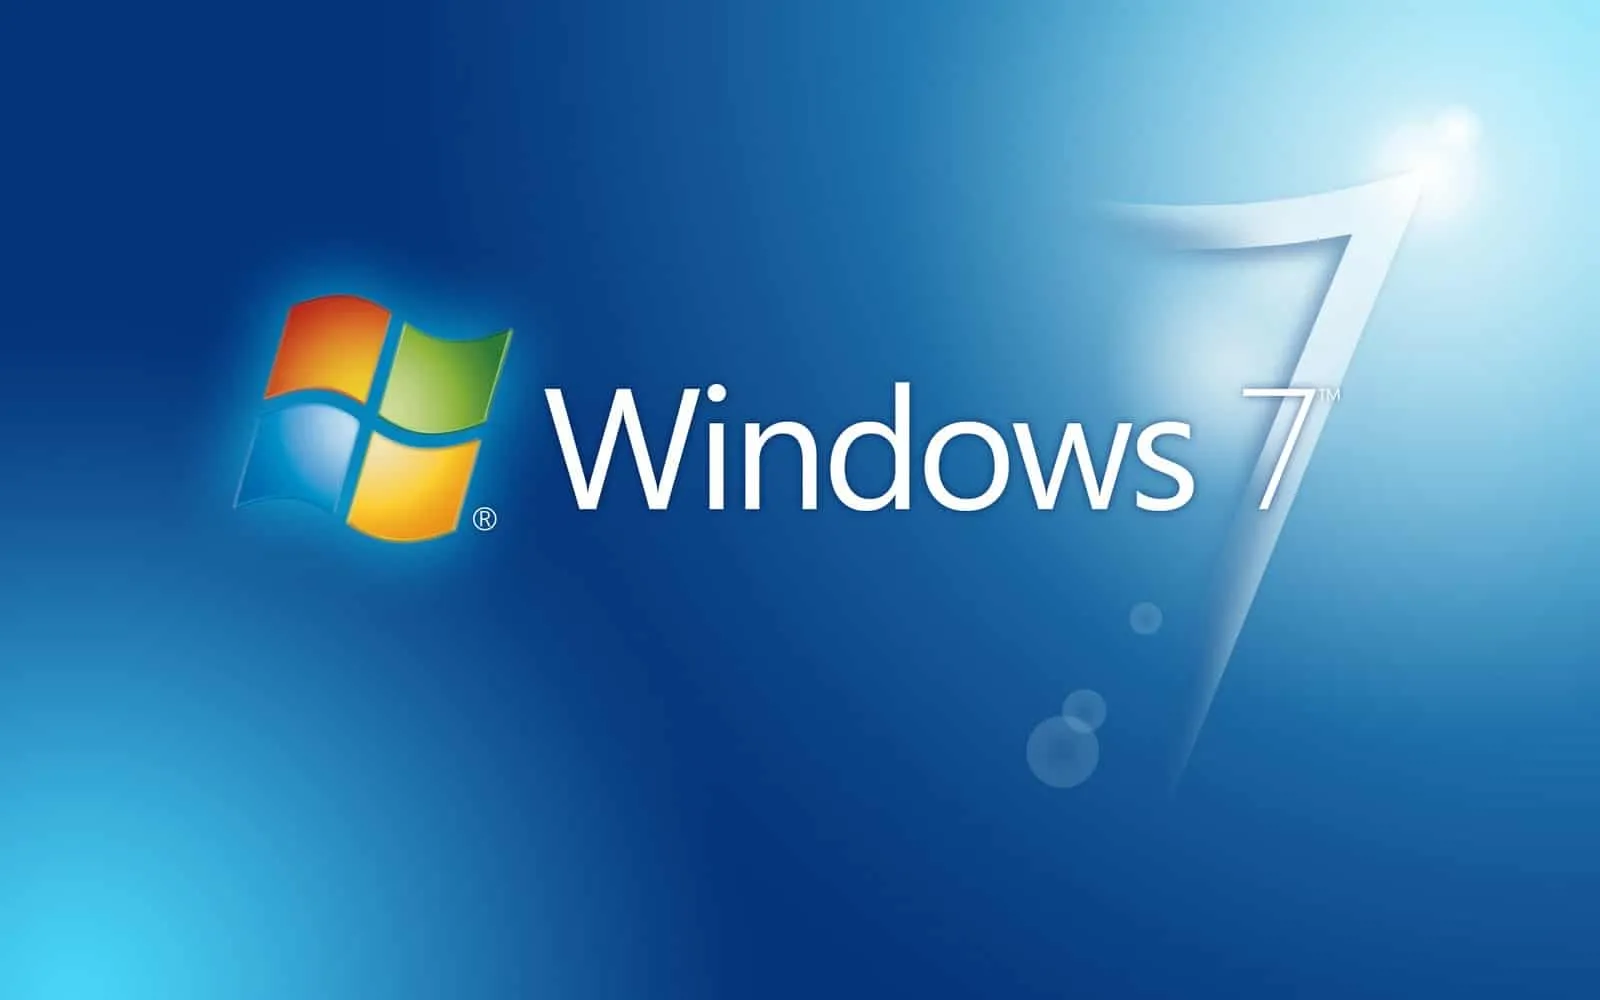 Come scaricare una copia di Windows 7 legalmente